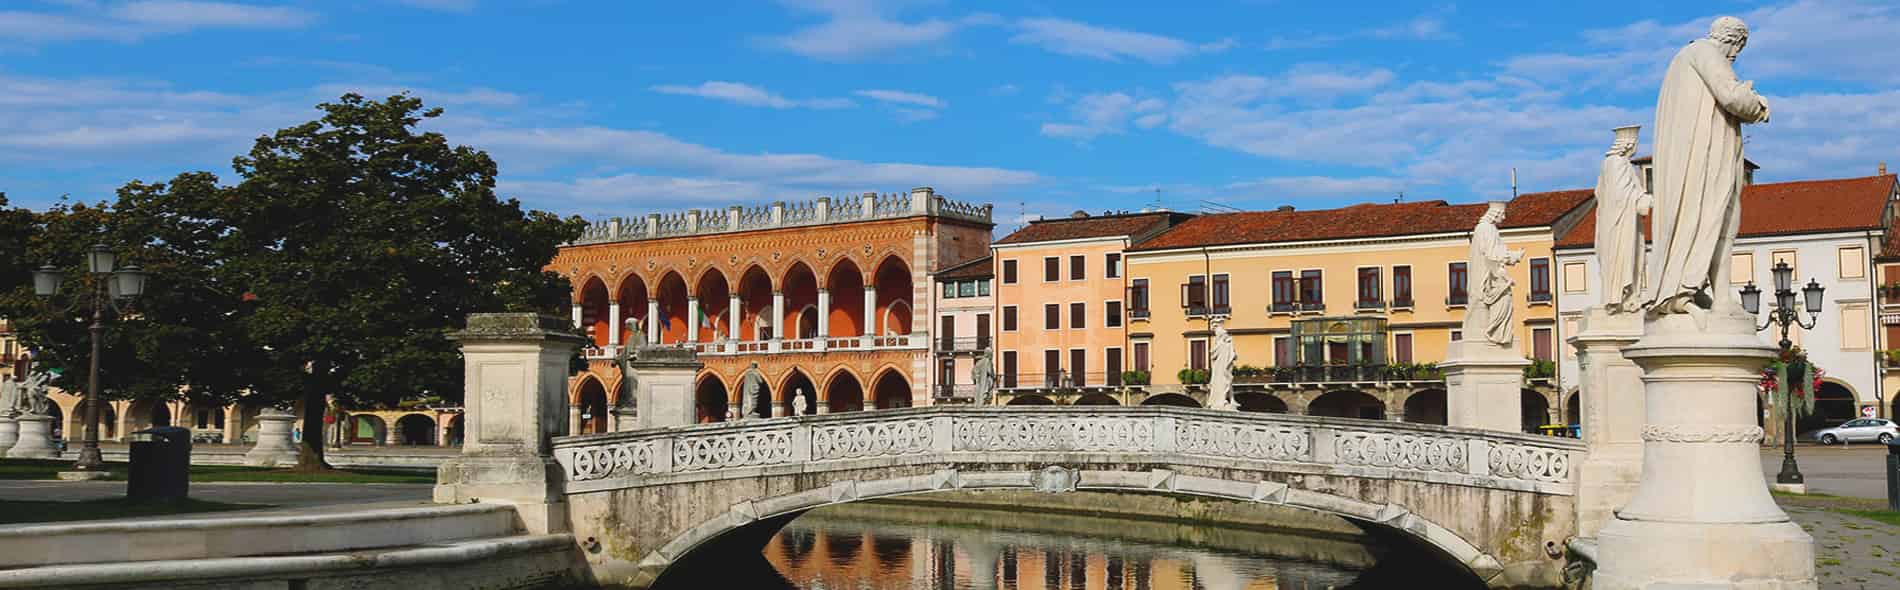 Visita e tour guidato a piedi per Padova